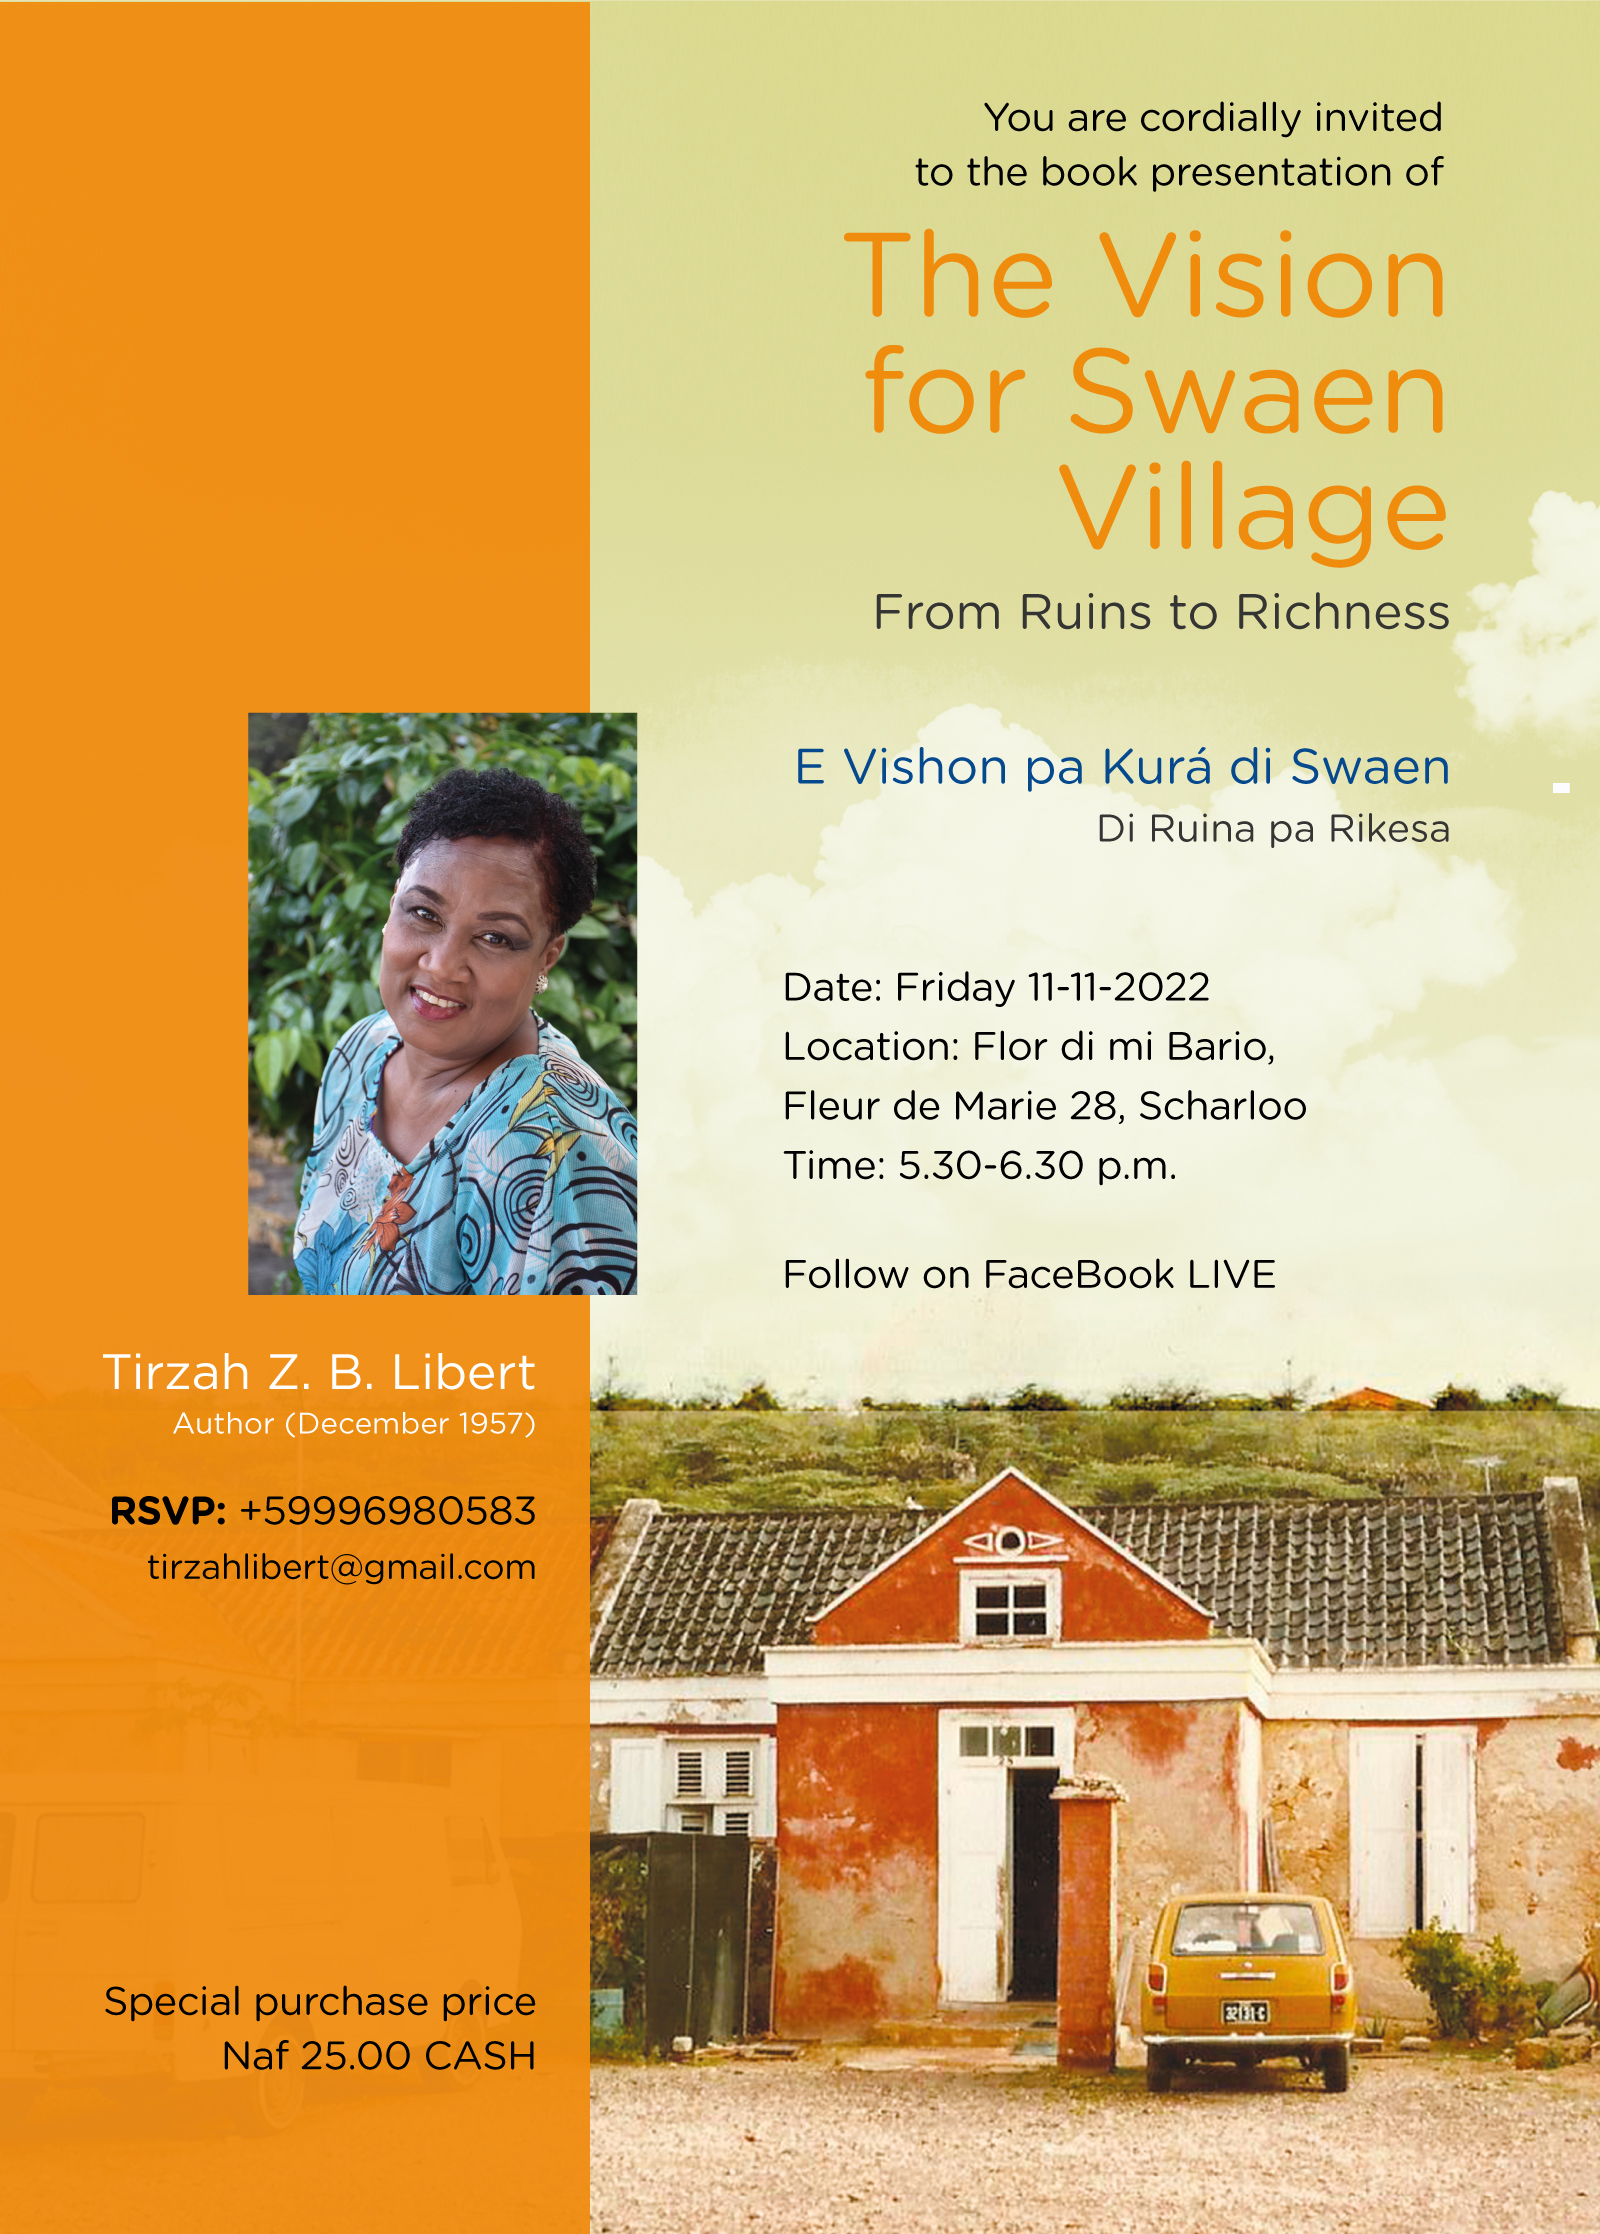 Swaen Village Book Presentation